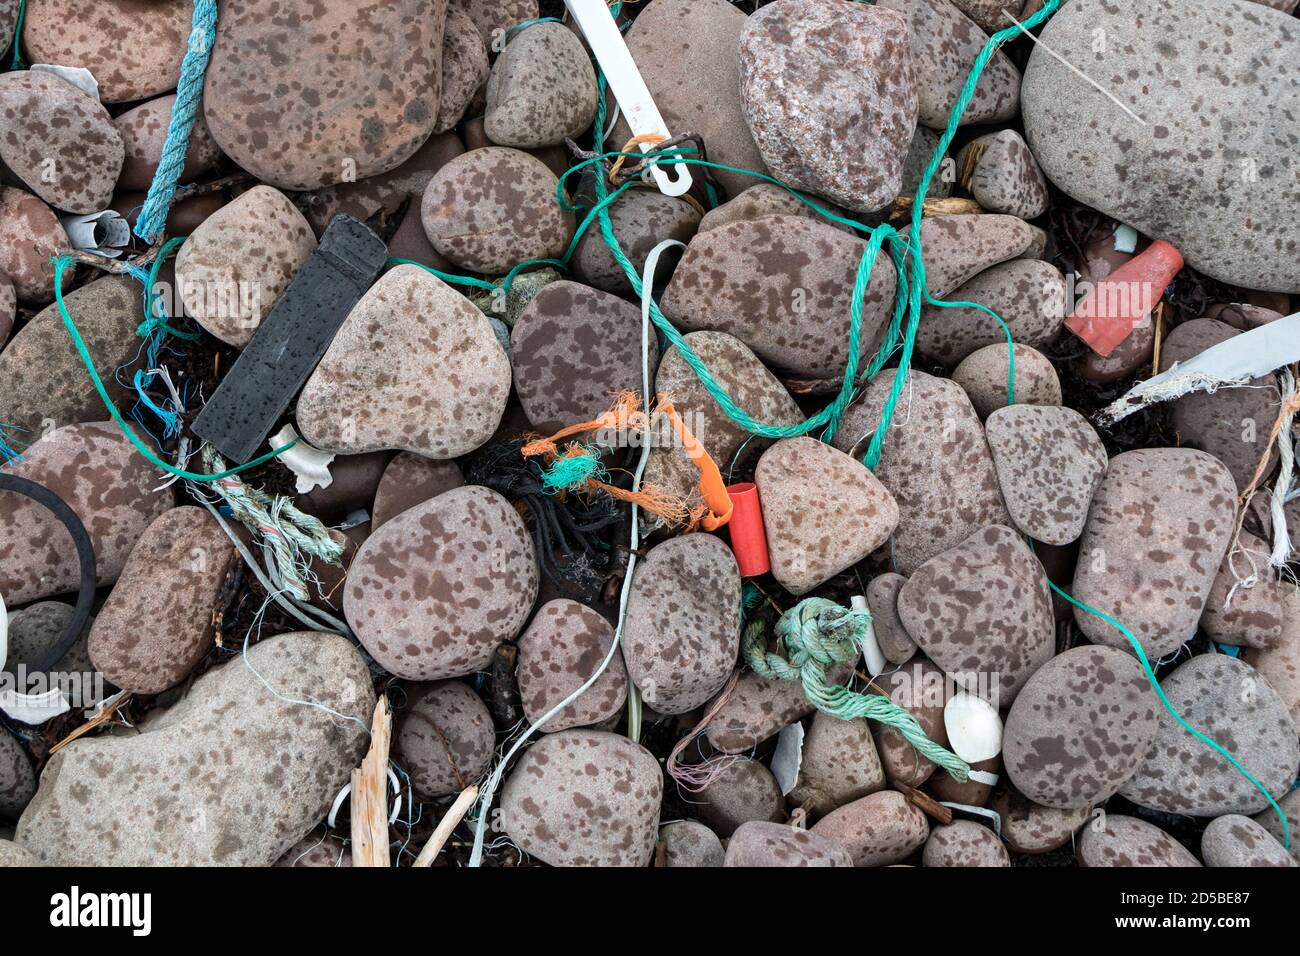 Déchets de plastique et autres débris lavés sur une plage sur la péninsule de Remote Coigach, Wester Ross, dans les Highlands du Nord-Ouest de l'Écosse, Royaume-Uni Banque D'Images